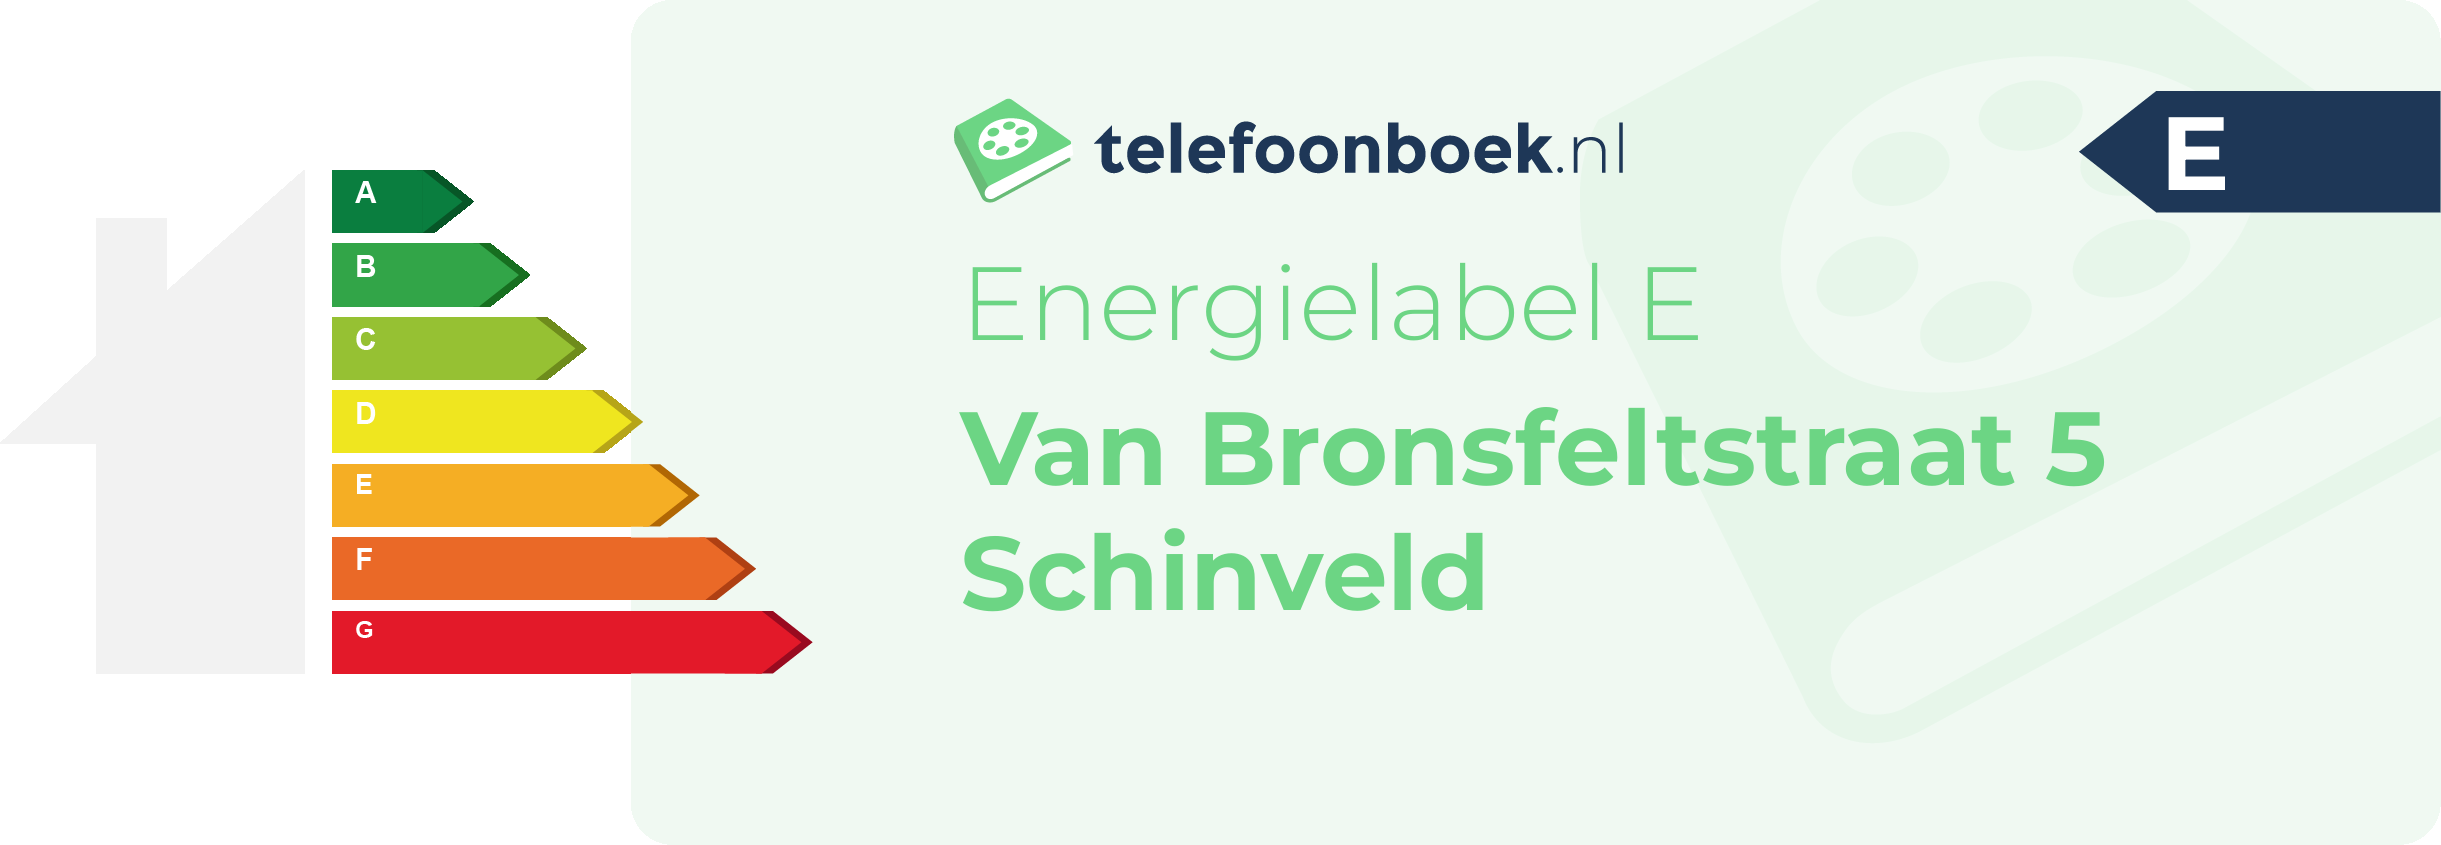 Energielabel Van Bronsfeltstraat 5 Schinveld